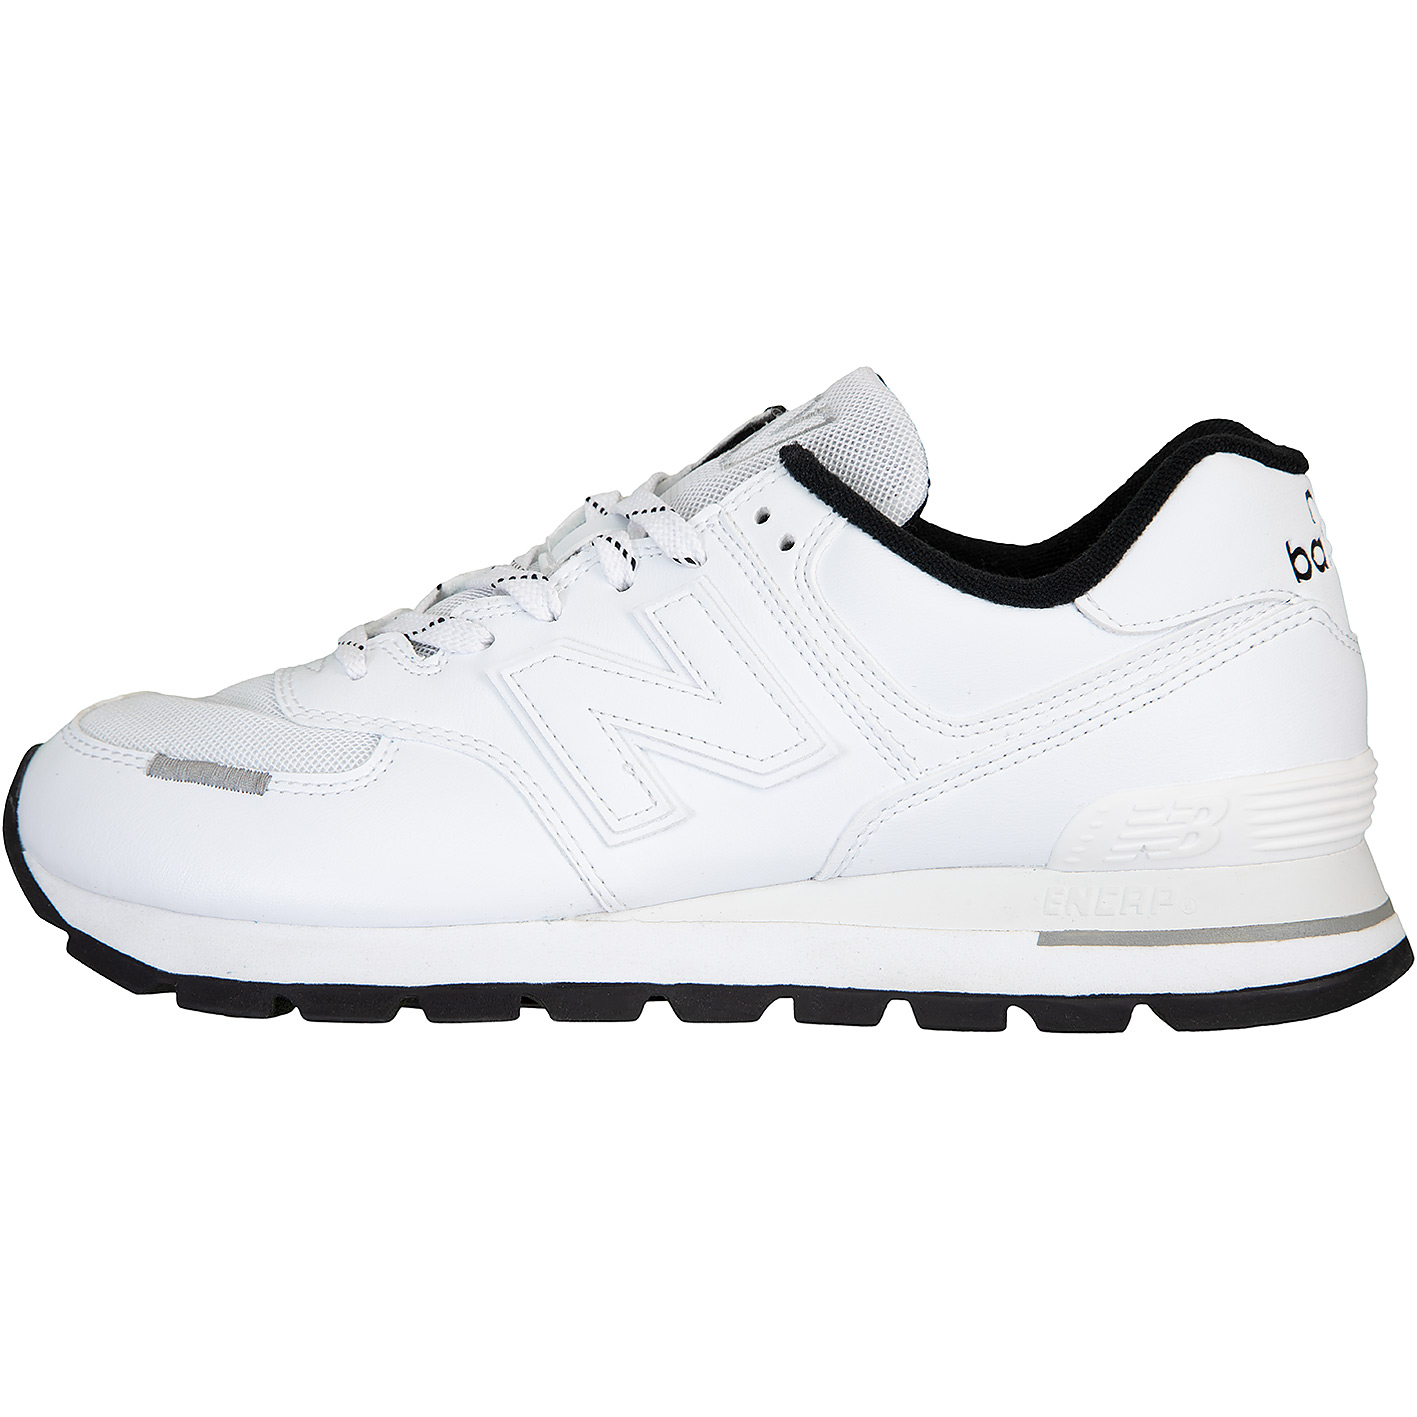 ☆ New Balance NB 574 Sneaker Schuhe weiß - hier bestellen!